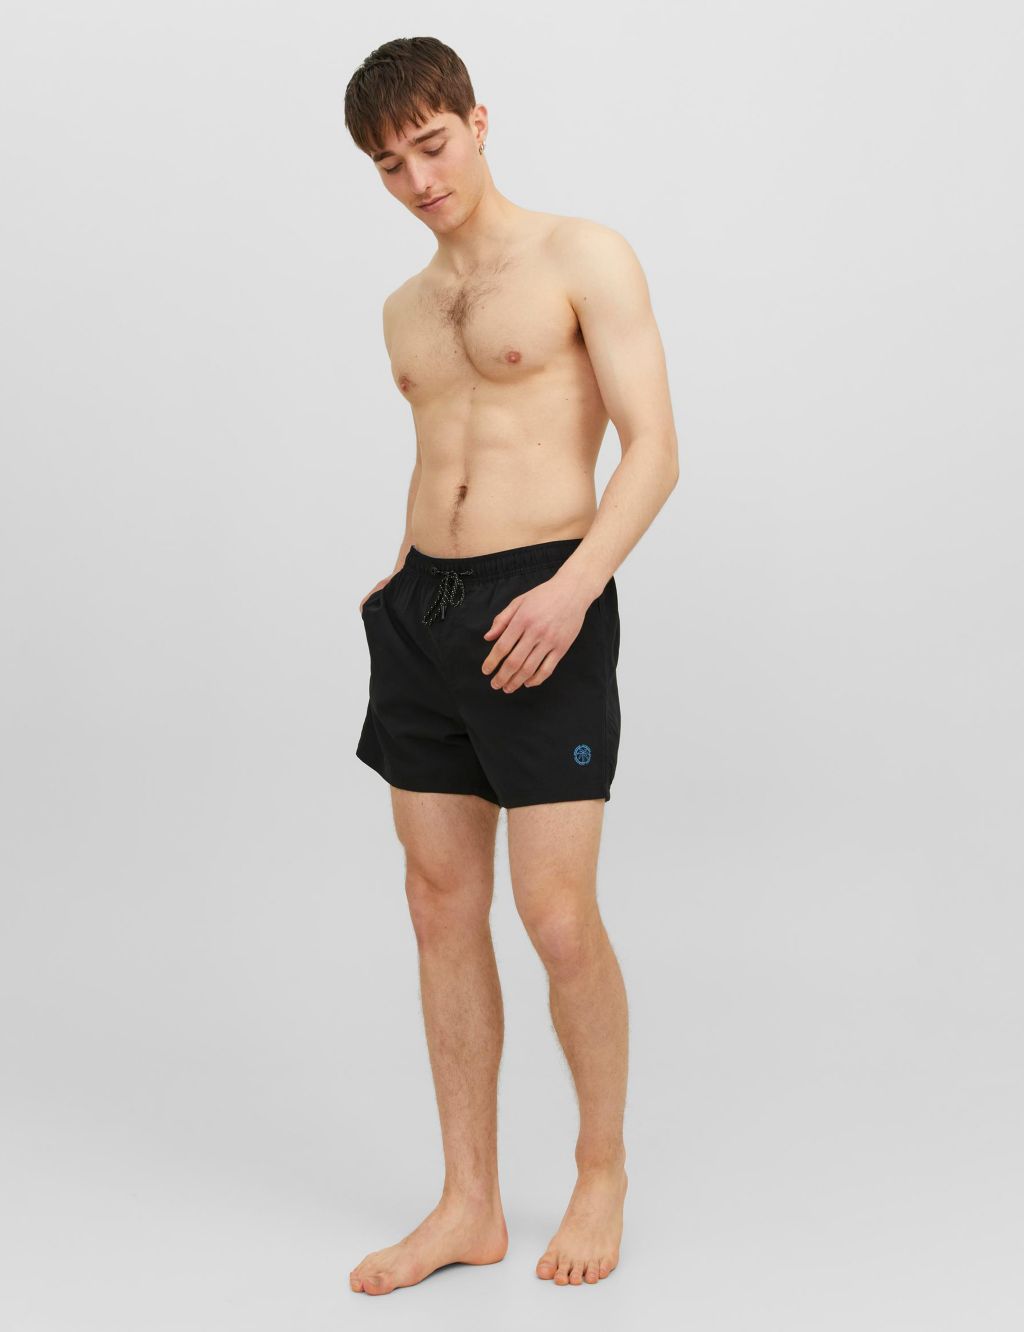 Pocketed Swim Shorts image 1